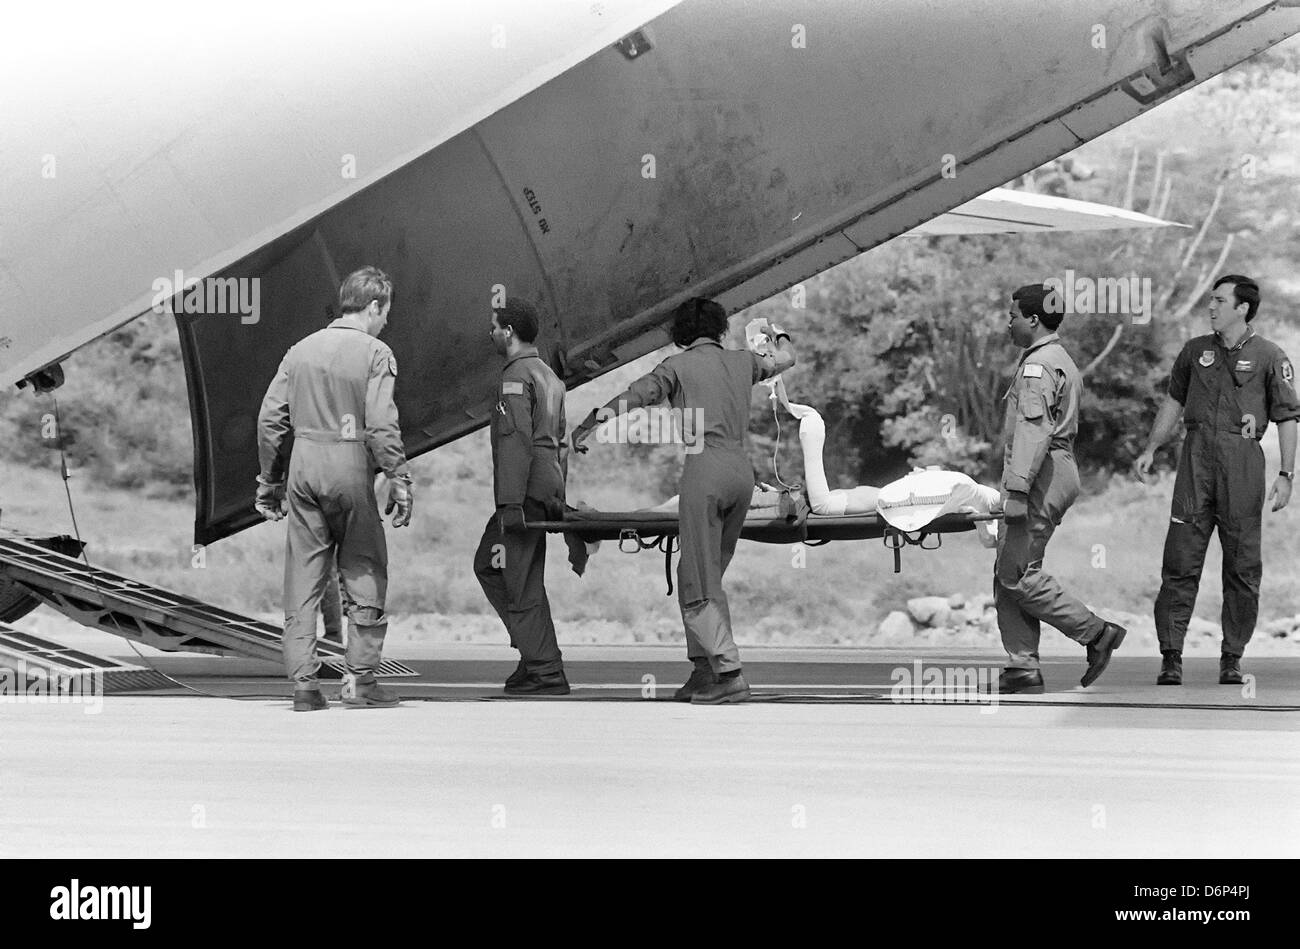 US Air Force Piloten evakuieren einen verwundeten Soldat zu einem wartenden c-141 Flugzeugen während der Invasion von Grenada, unter dem Codenamen Operation Urgent Fury 1. November 1983 in St. Georges, Grenada. Die Invasion begann am 25. Oktober 1983 und wurde die erste größere militärische Aktion von den Vereinigten Staaten seit dem Ende des Vietnam-Krieges. Stockfoto